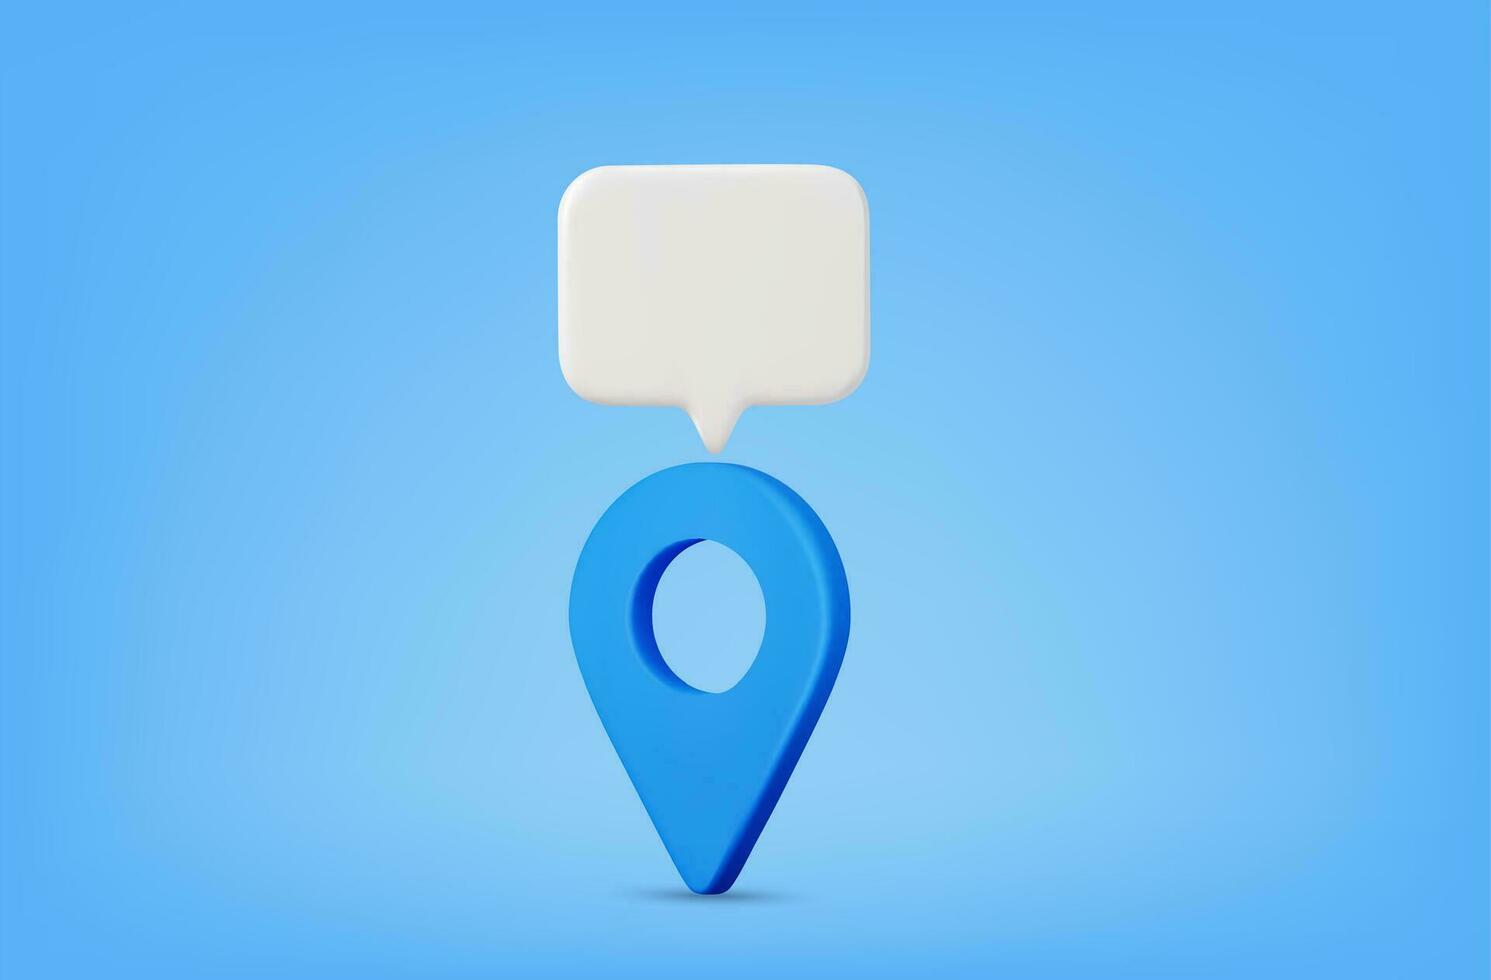 3d realista ubicación mapa alfiler GPS puntero marcadores, geolocalización y navegación. Bosquejo de mapa puntero y habla burbuja. icono para móvil dispositivos, web diseño, infografía elementos. vector ilustración